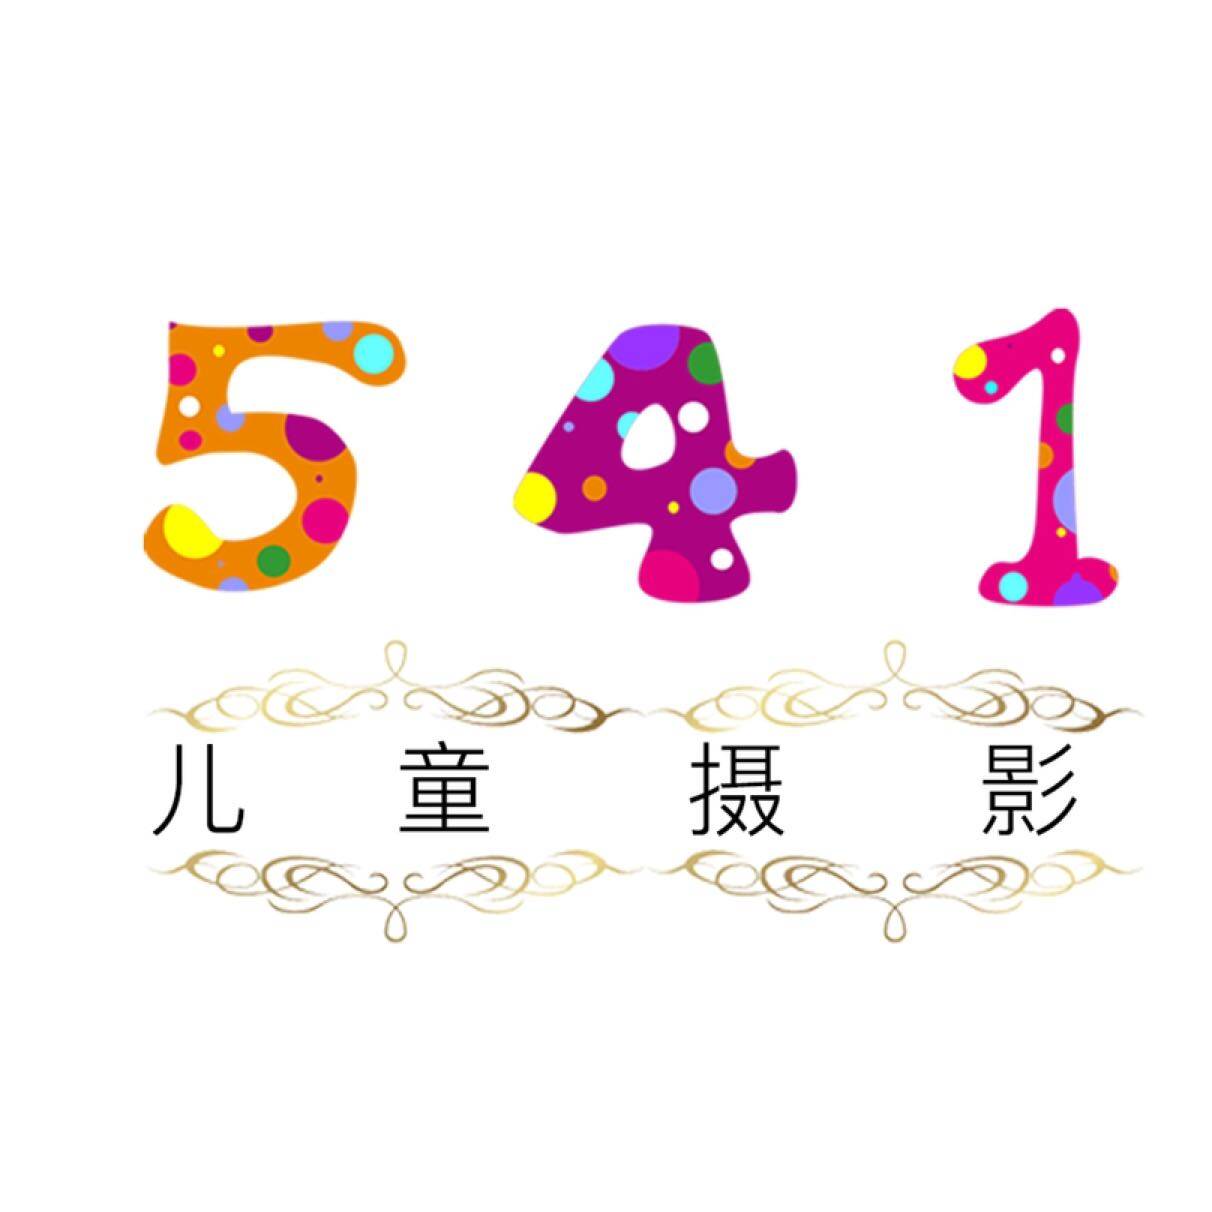 东莞市五十忆摄影有限公司logo